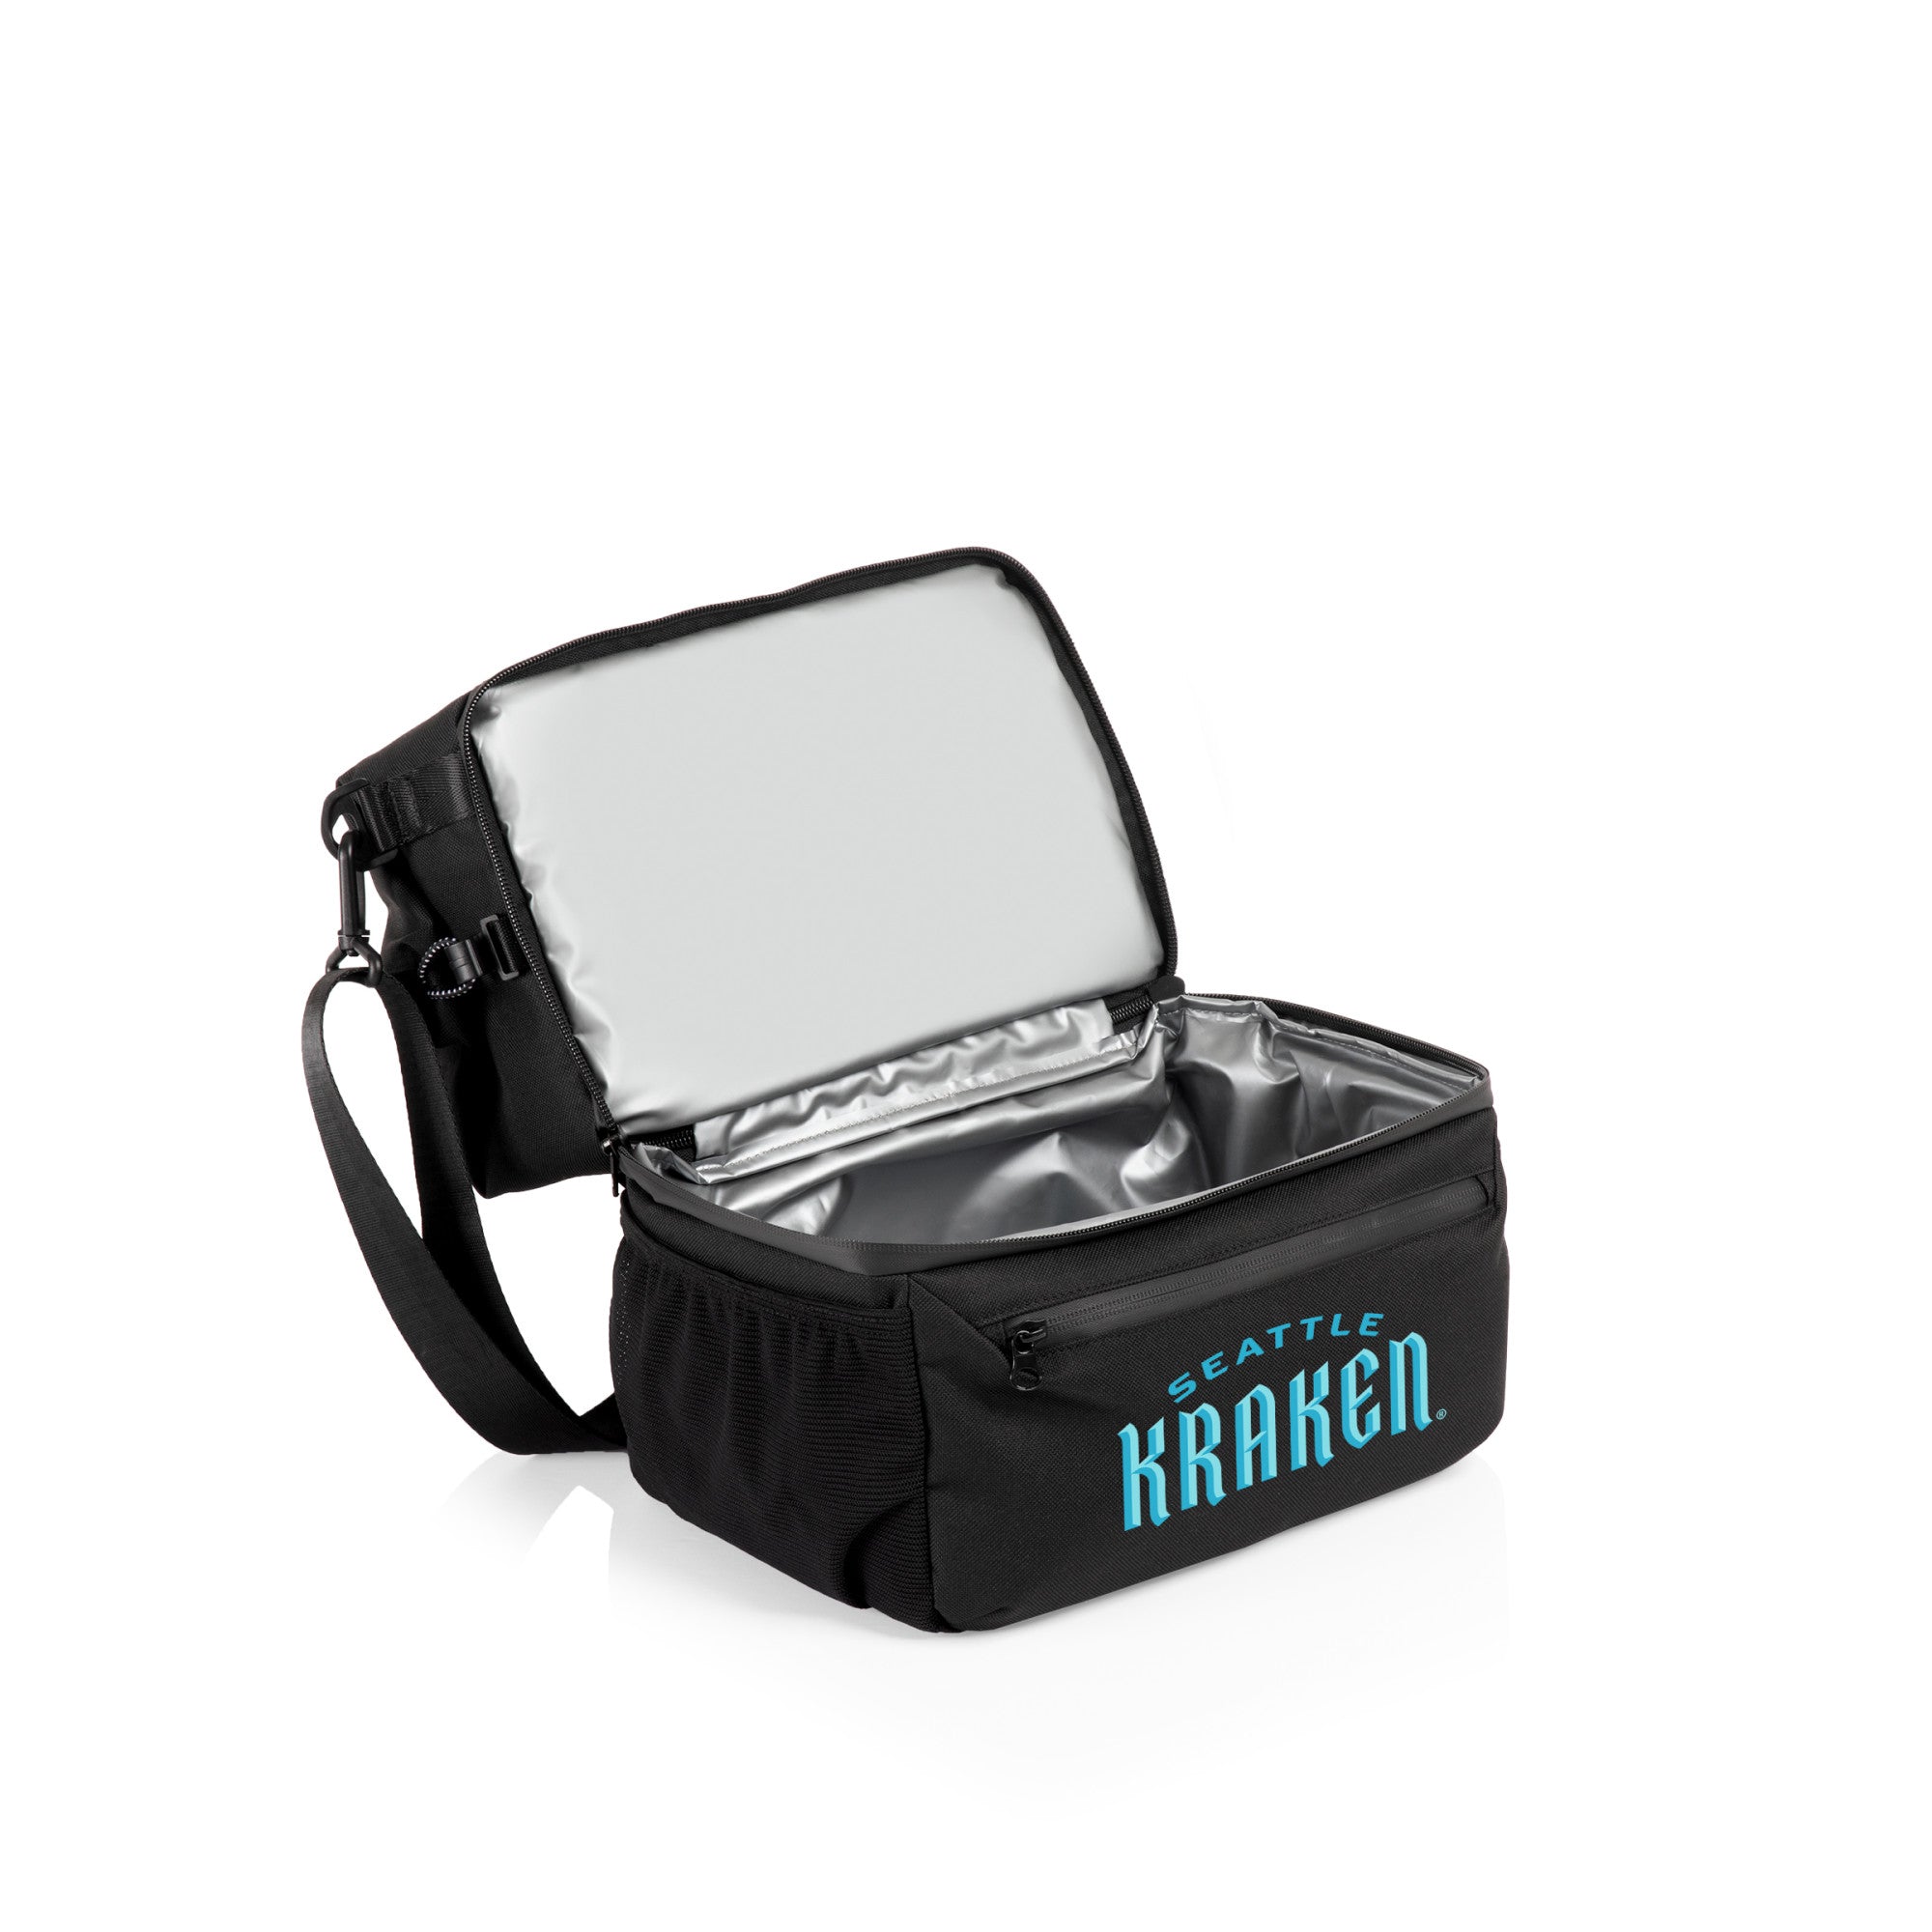 Seattle Kraken - Tarana Lunch Bag Cooler with Utensils